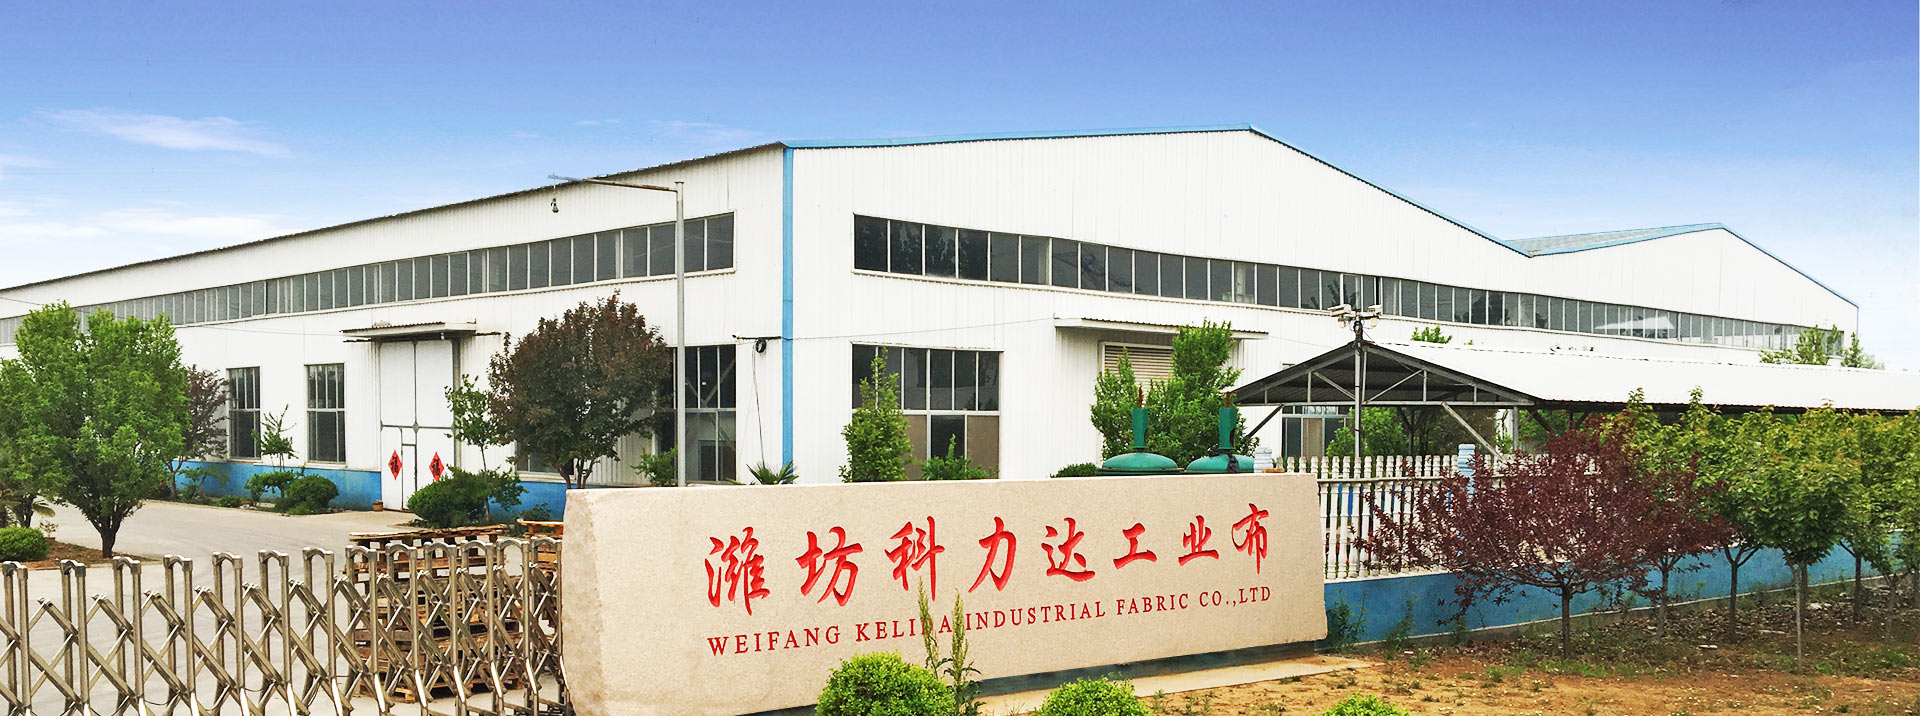 Weifang Kelida Industrial Fabric Co., Ltd.